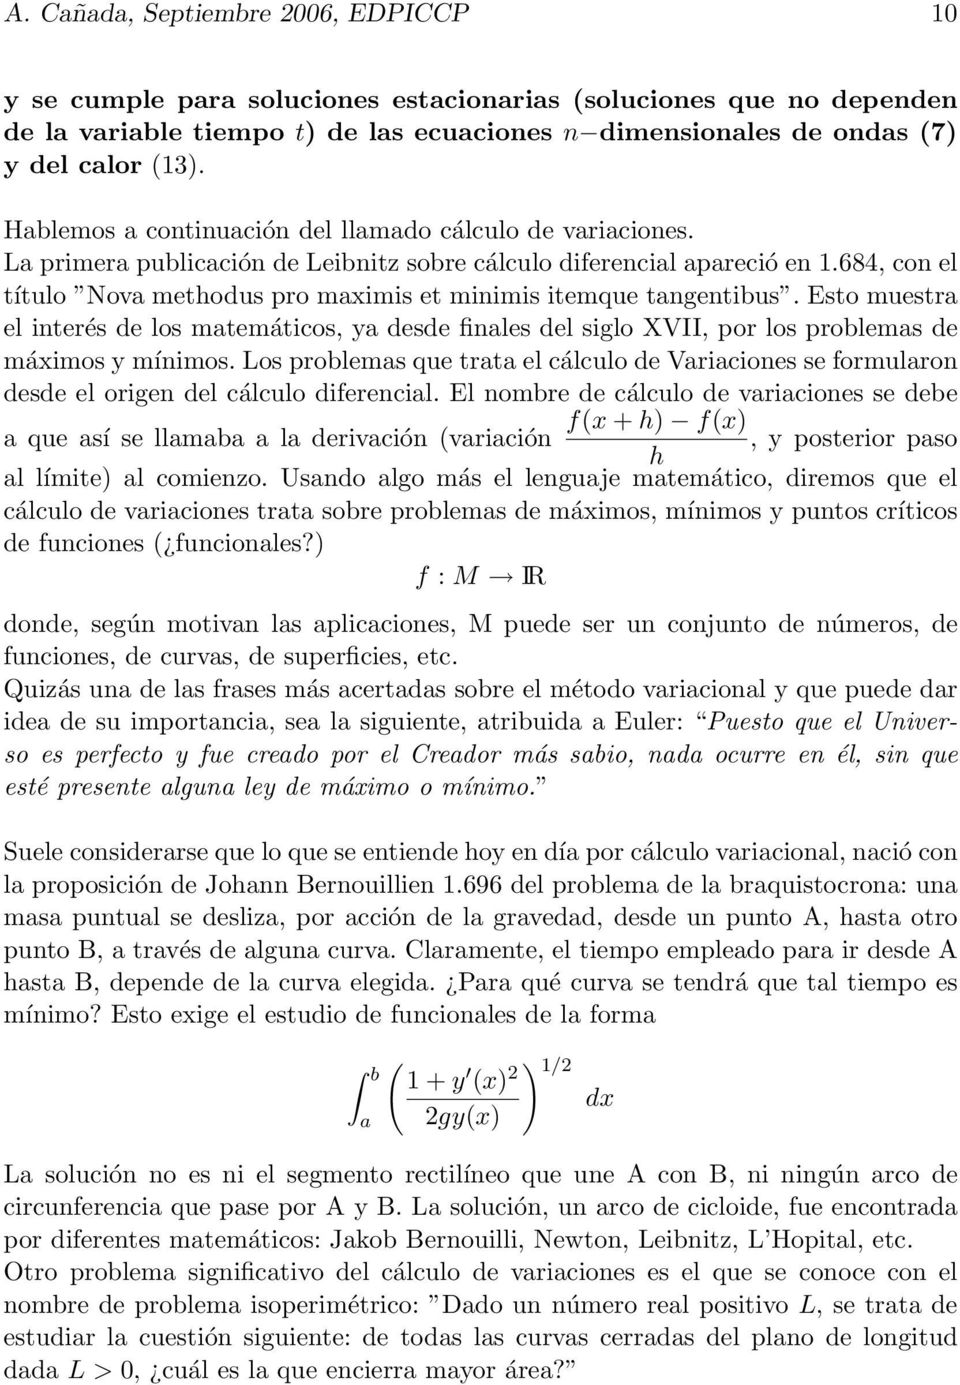 684, con el título Nova methodus pro maximis et minimis itemque tangentibus. Esto muestra el interés de los matemáticos, ya desde finales del siglo XVII, por los problemas de máximos y mínimos.